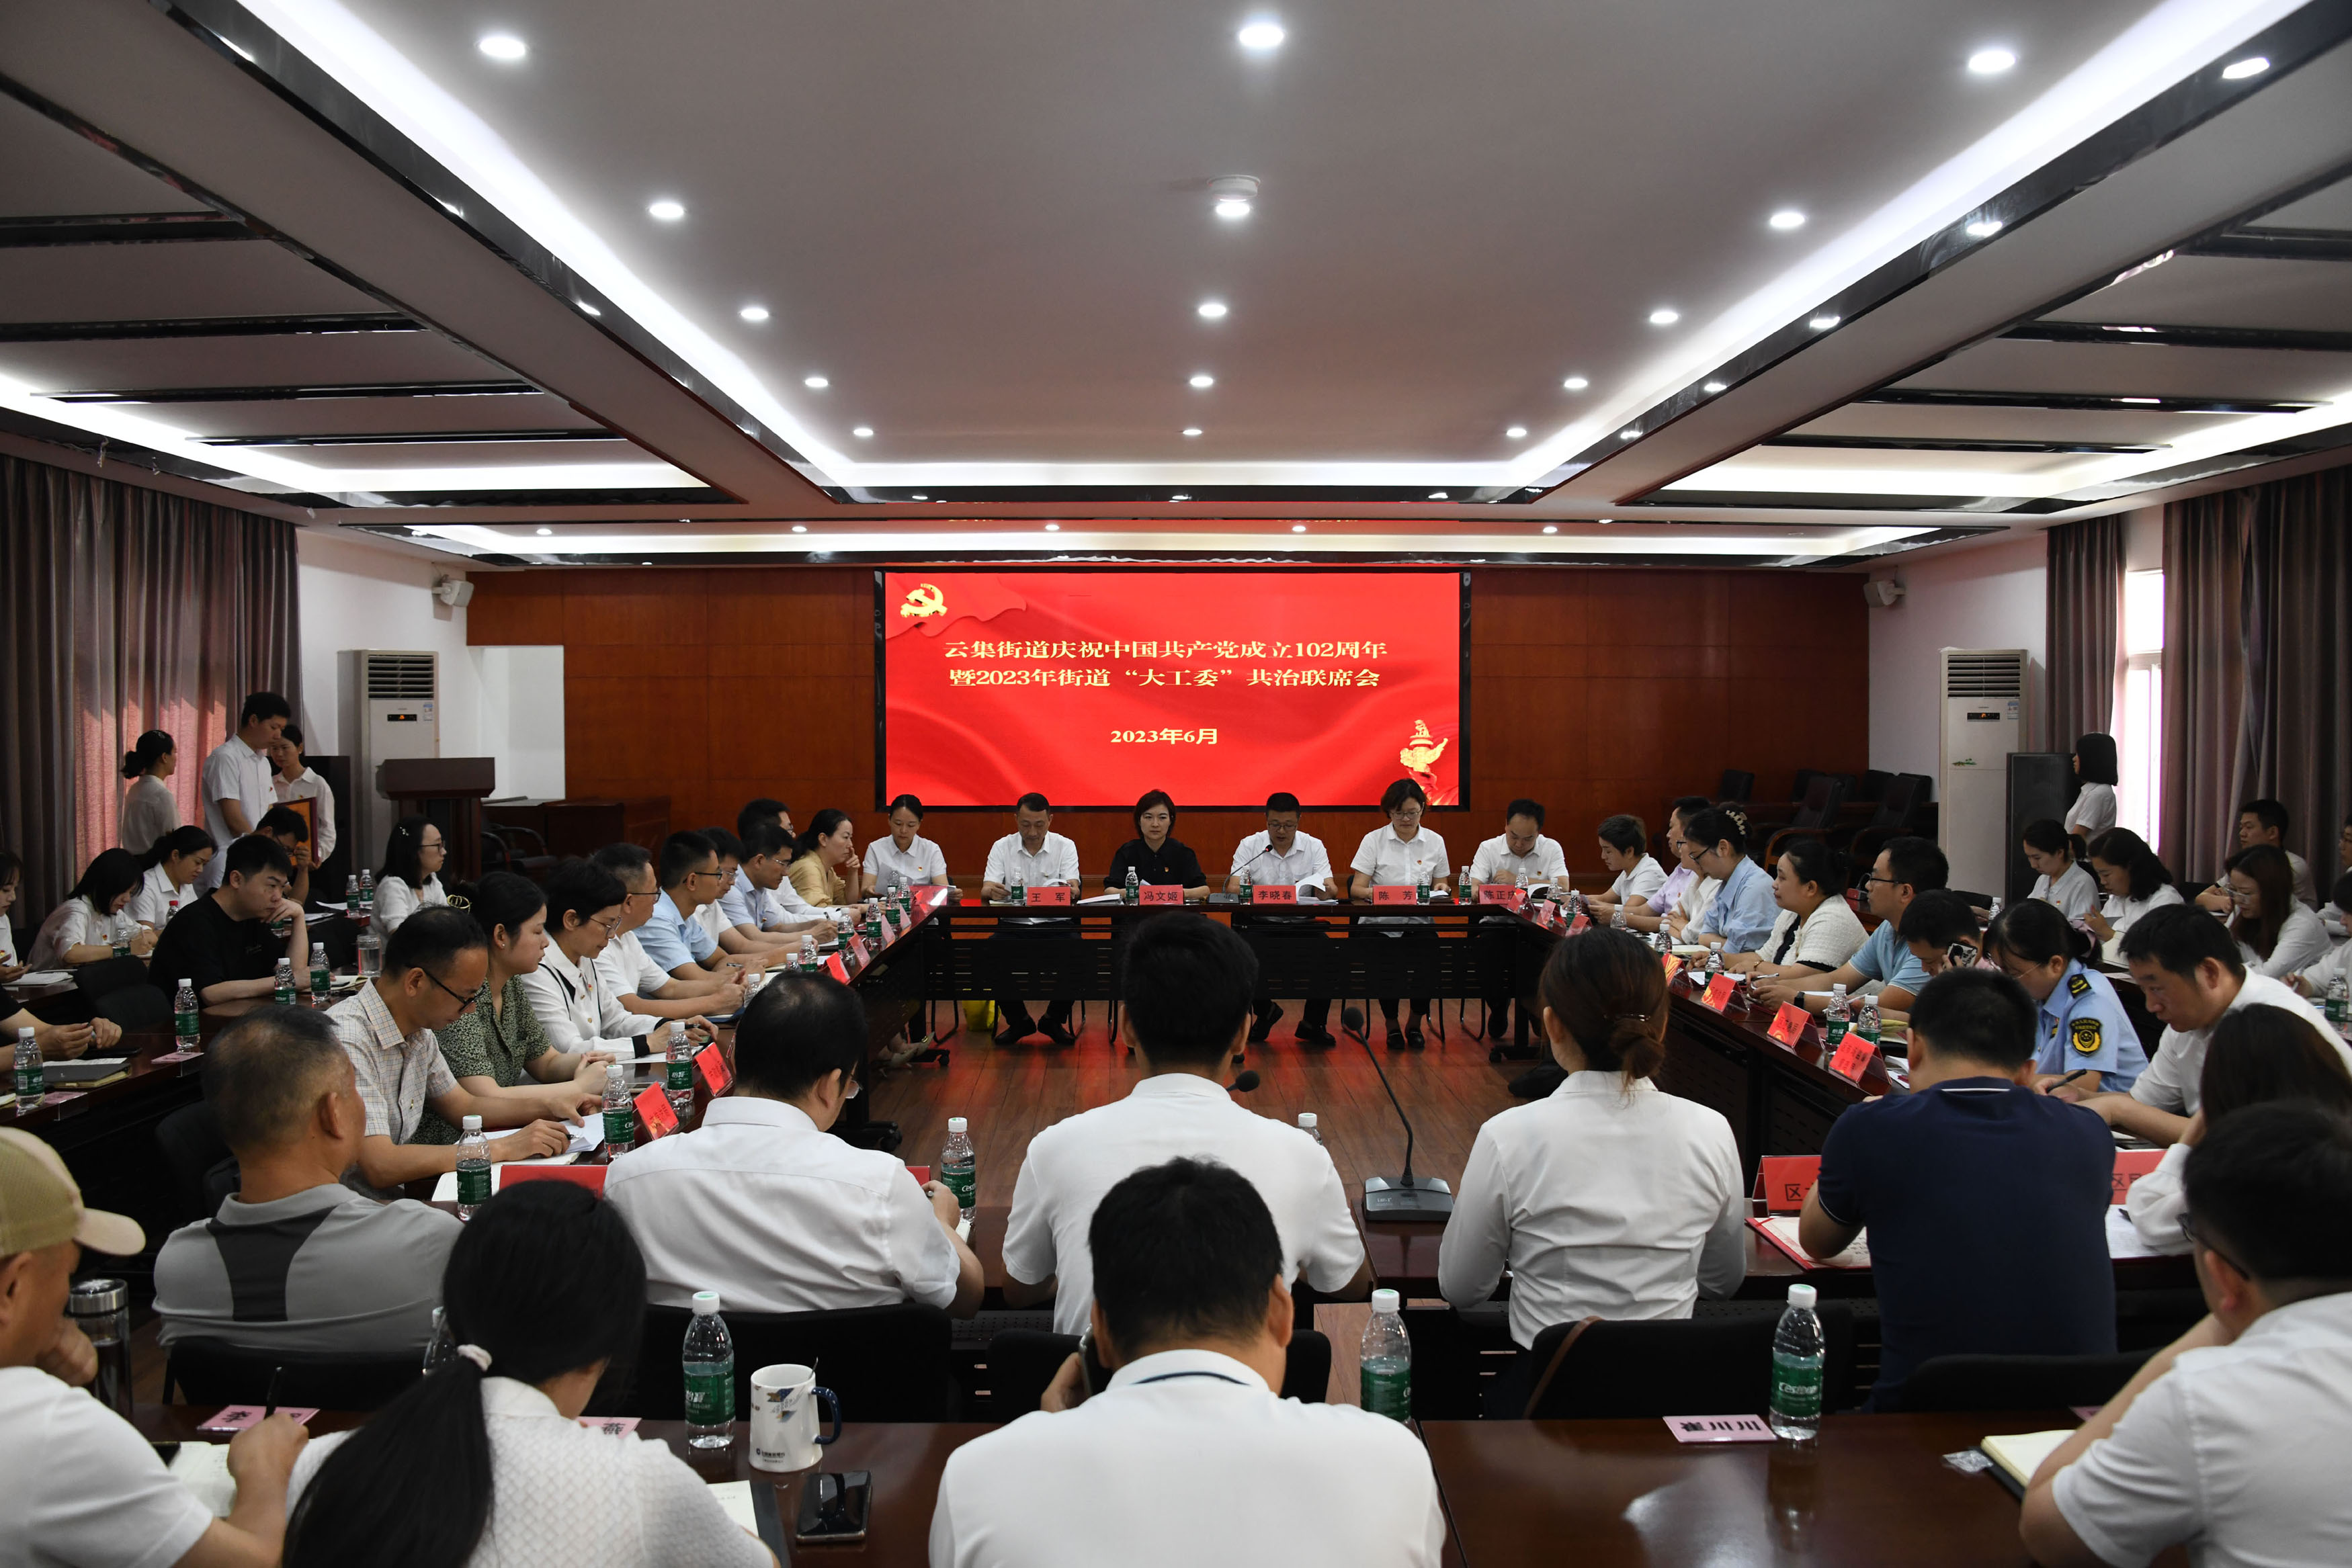 公司党支部喜获2023年度“先进基层党组织” 暨参加庆祝中国